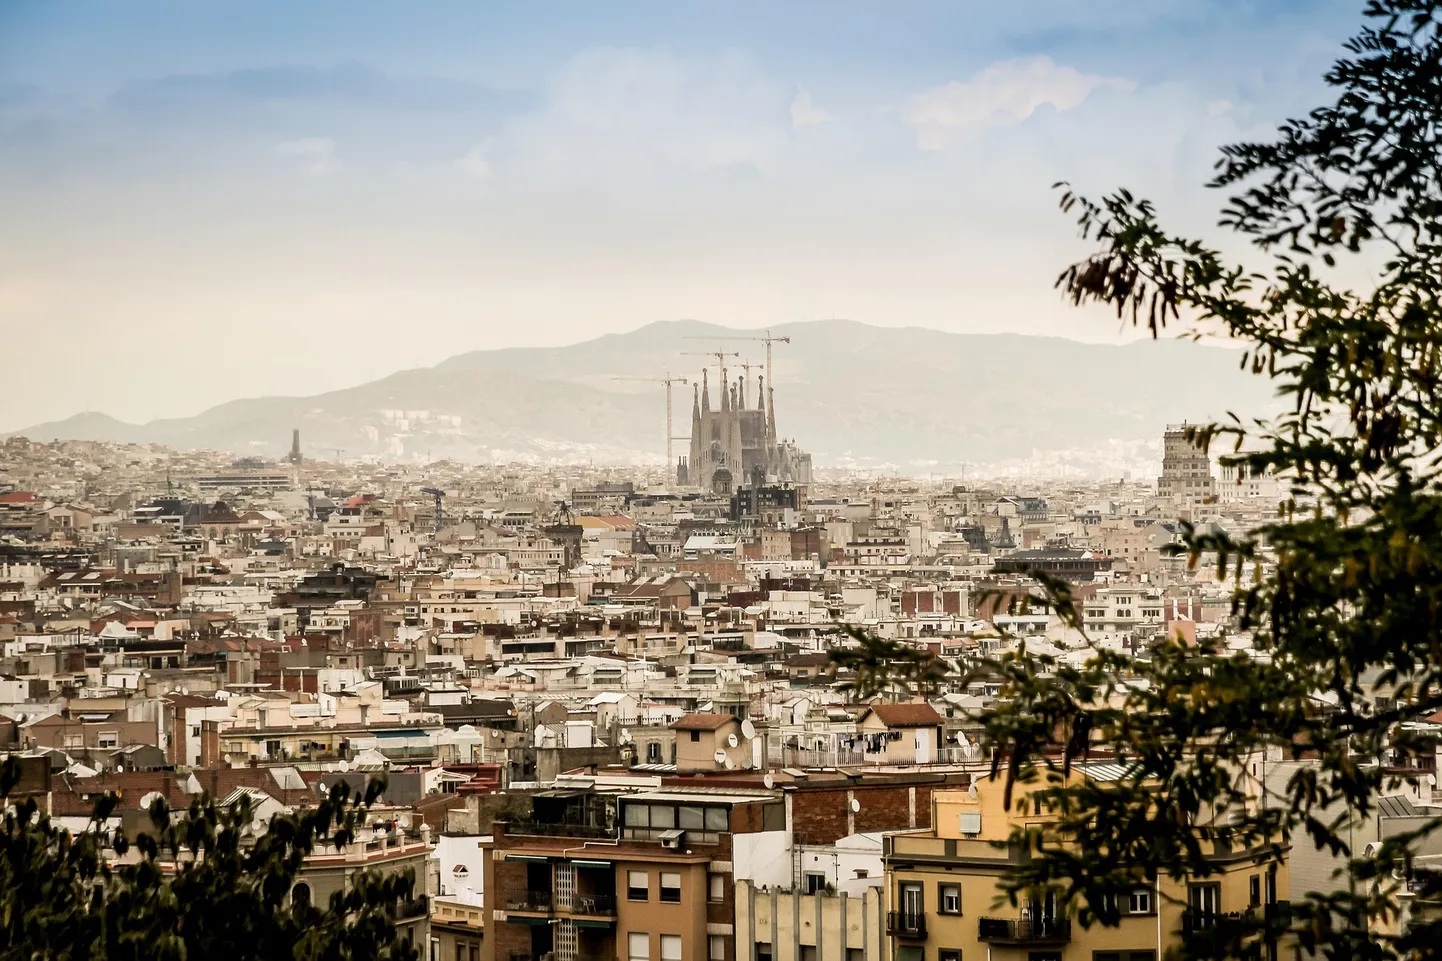 Barcelona on hea näide tiheasustusega linnast, kus on mugav ja kiire igale poole kohale jõuda. Paraku vajaks selle elukeskkond rohkem rohelust ja vähem õhusaastet, et olla ideaalseks elupaigaks, osutab teadusuuring.